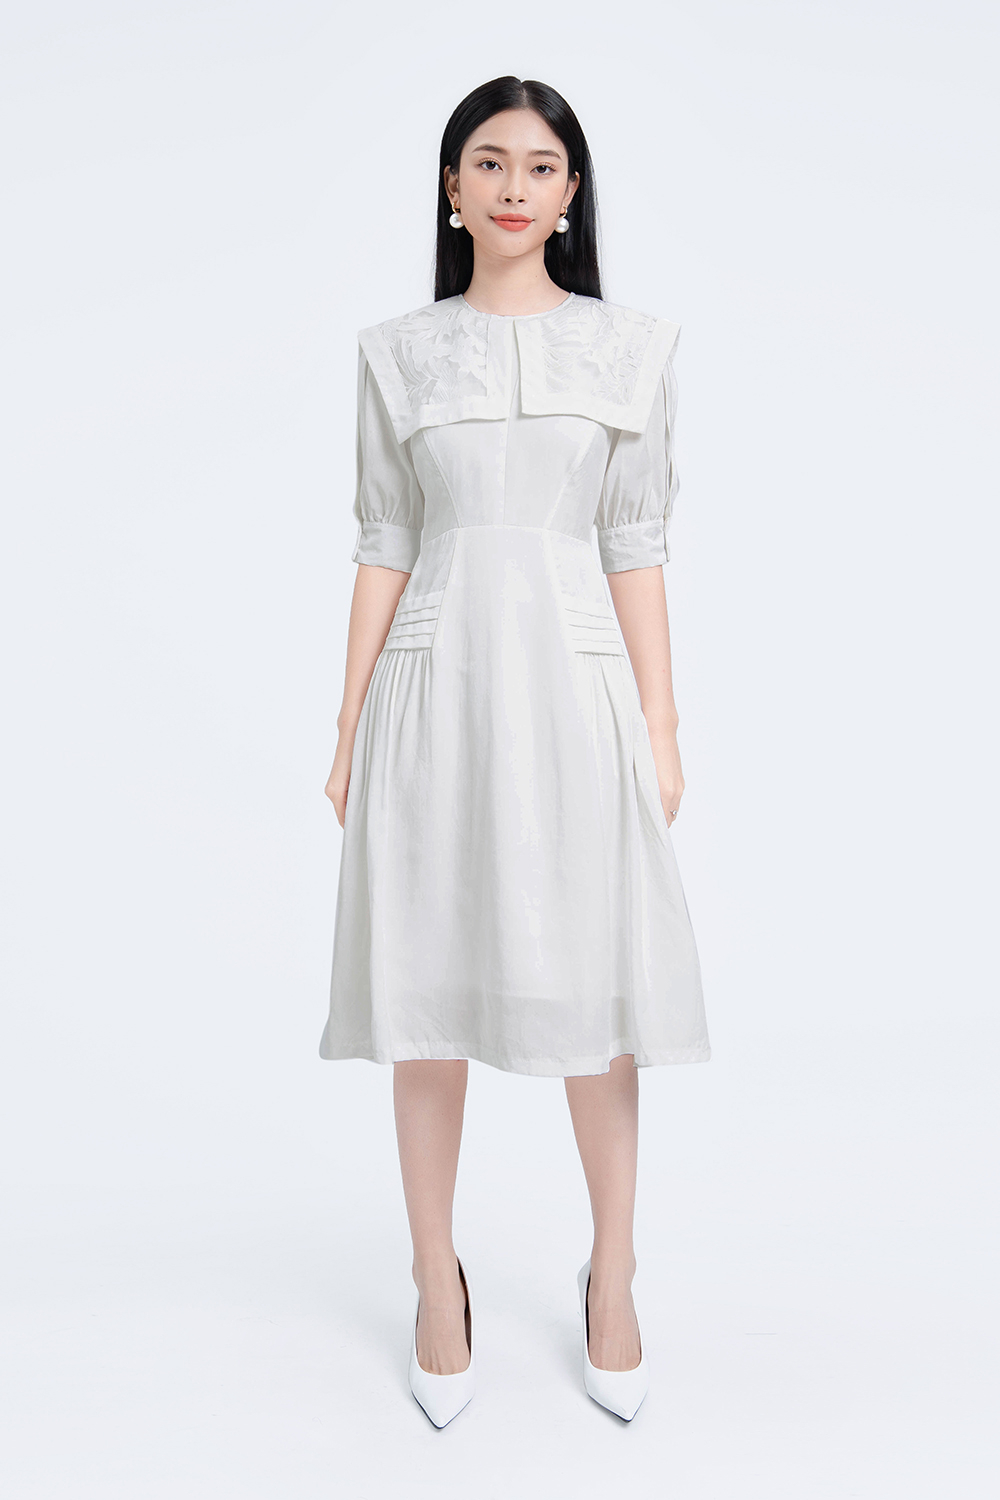 Đầm trắng xòe tay xếp ly cách điệu - Quần Áo Xưởng May ANN